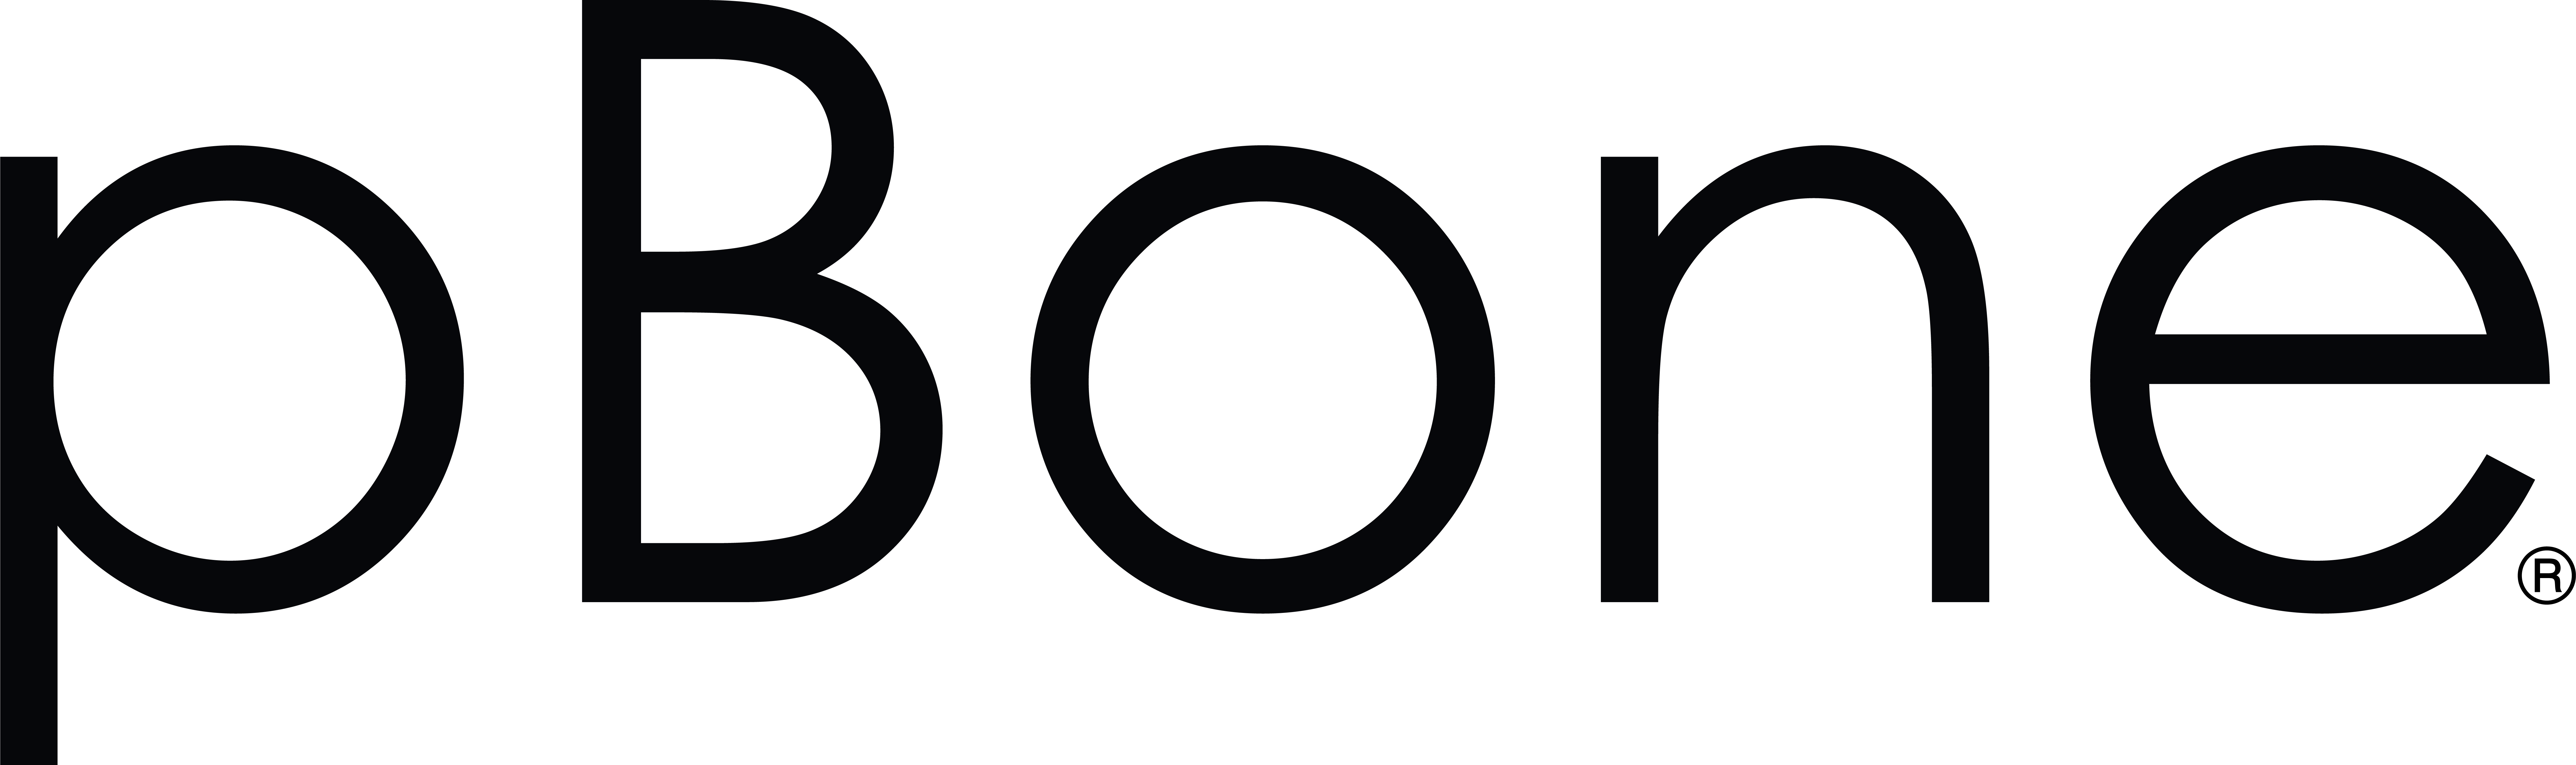 PBONE logo 2